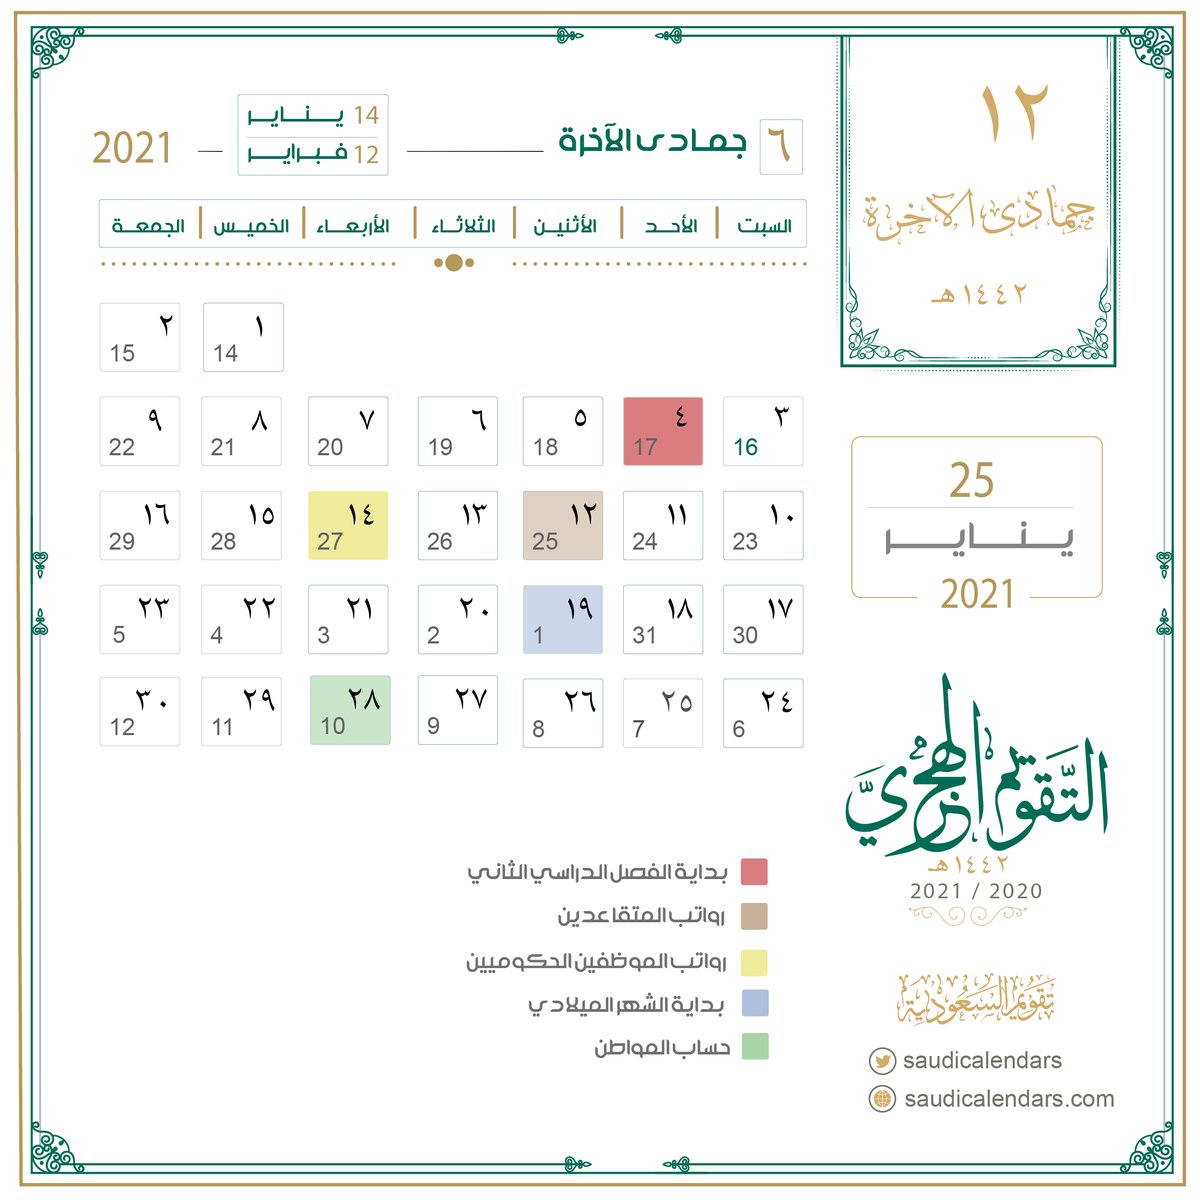 تقويم السعودية On Twitter تاريخ اليوم الاثنين 12 جمادى الآخرة 6 1442 هـ الموافق 25 يناير 1 2021 م أيام متبقية التقاعد اليوم الراتب بعد غد